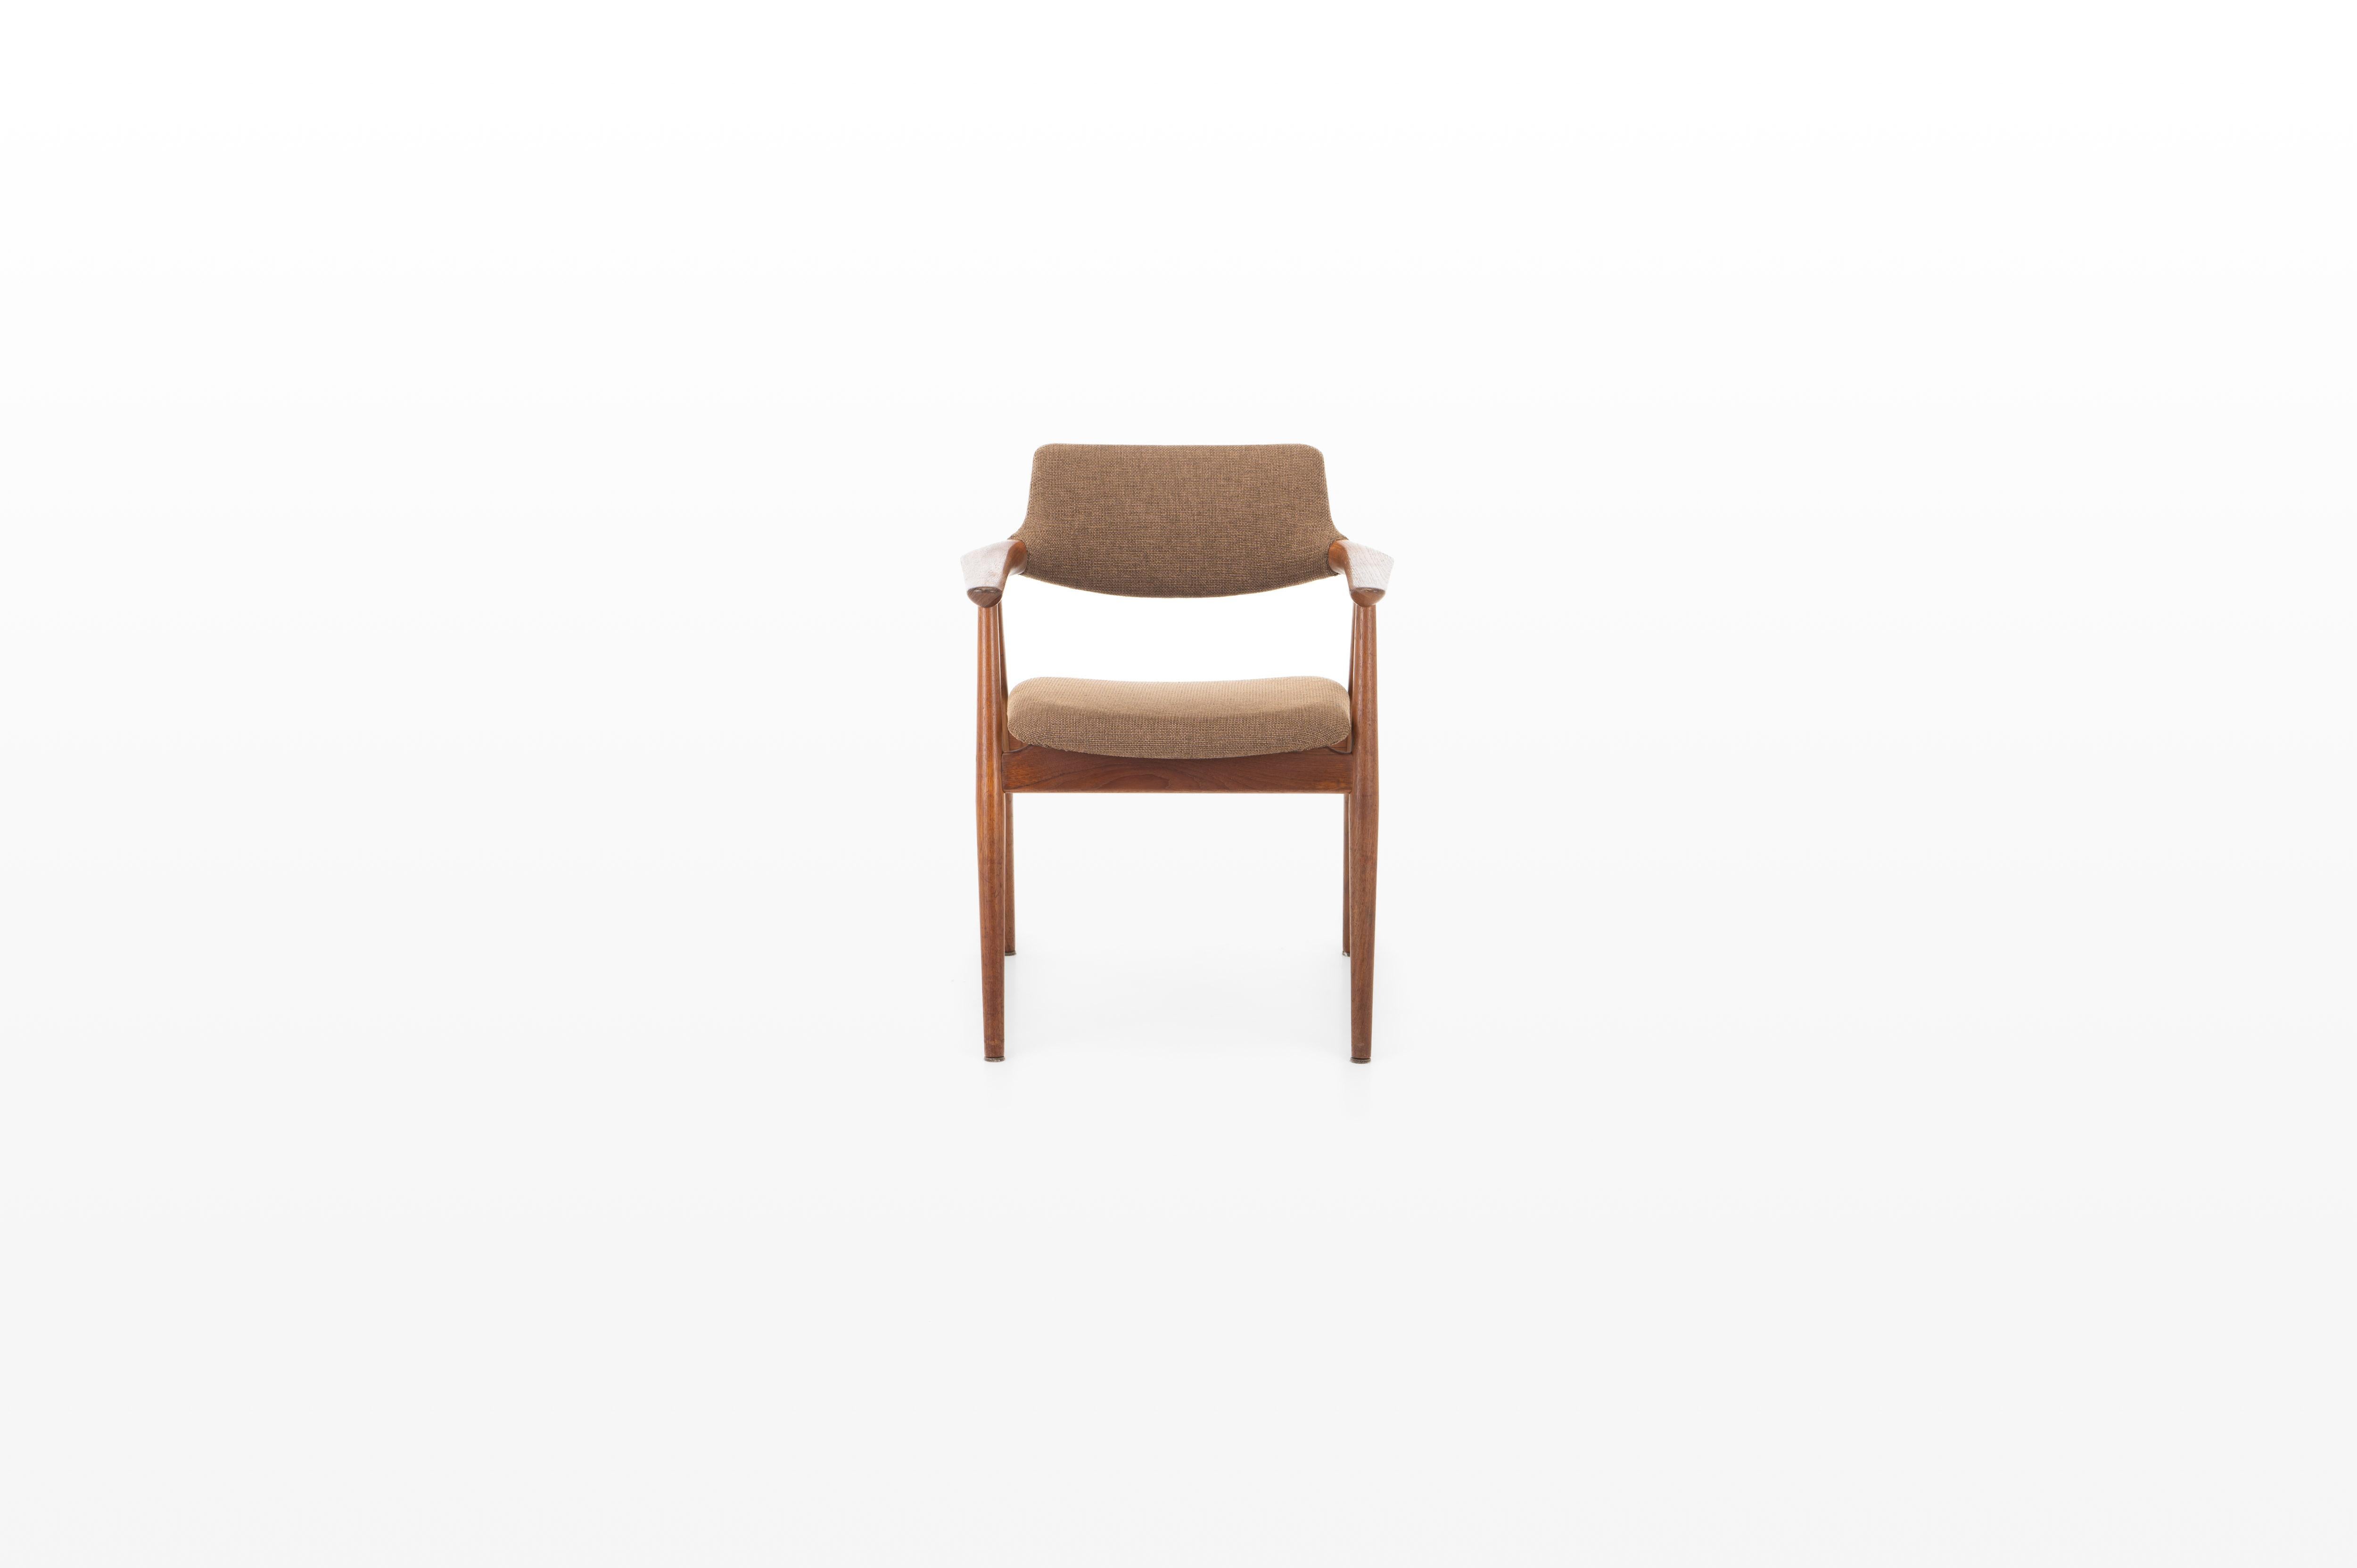 Dänischer Sessel von Svend Åge Eriksen für Glostrup, Dänemark 1960er Jahre. Der Stuhl ist aus Teakholz gefertigt und befindet sich in einem hervorragenden Originalzustand.